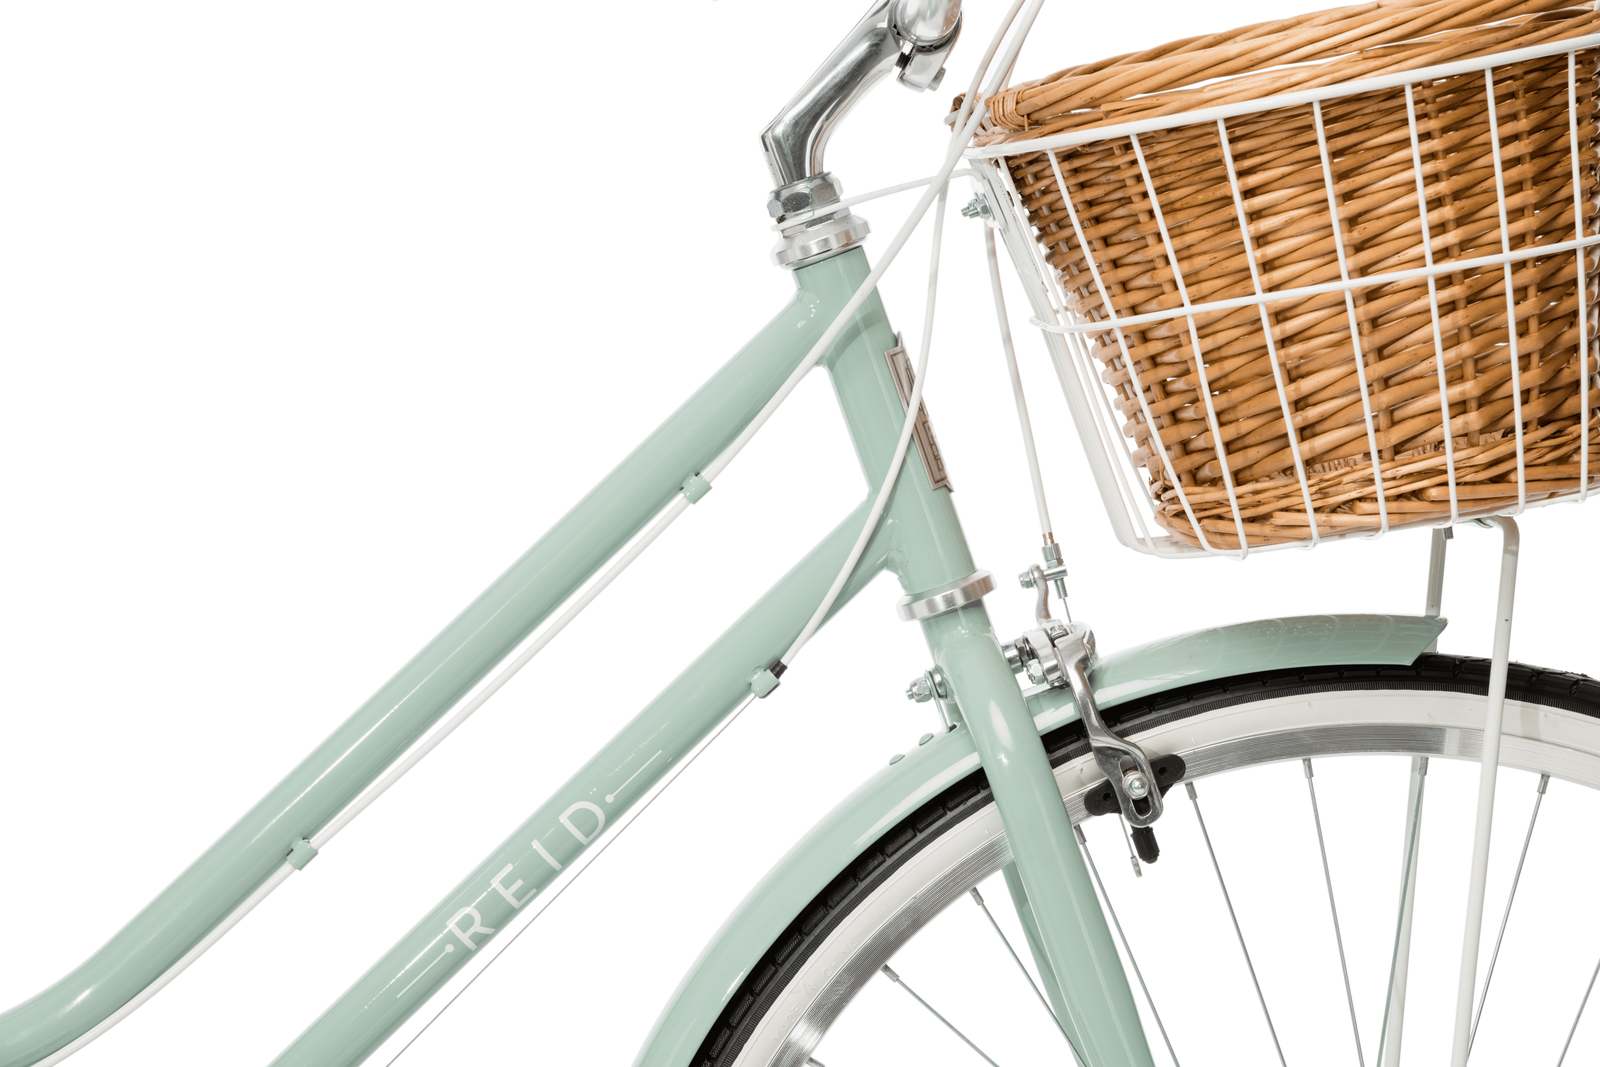 Ladies Classic Plus Vintage Bike Vintage Bikes Reid Cycles